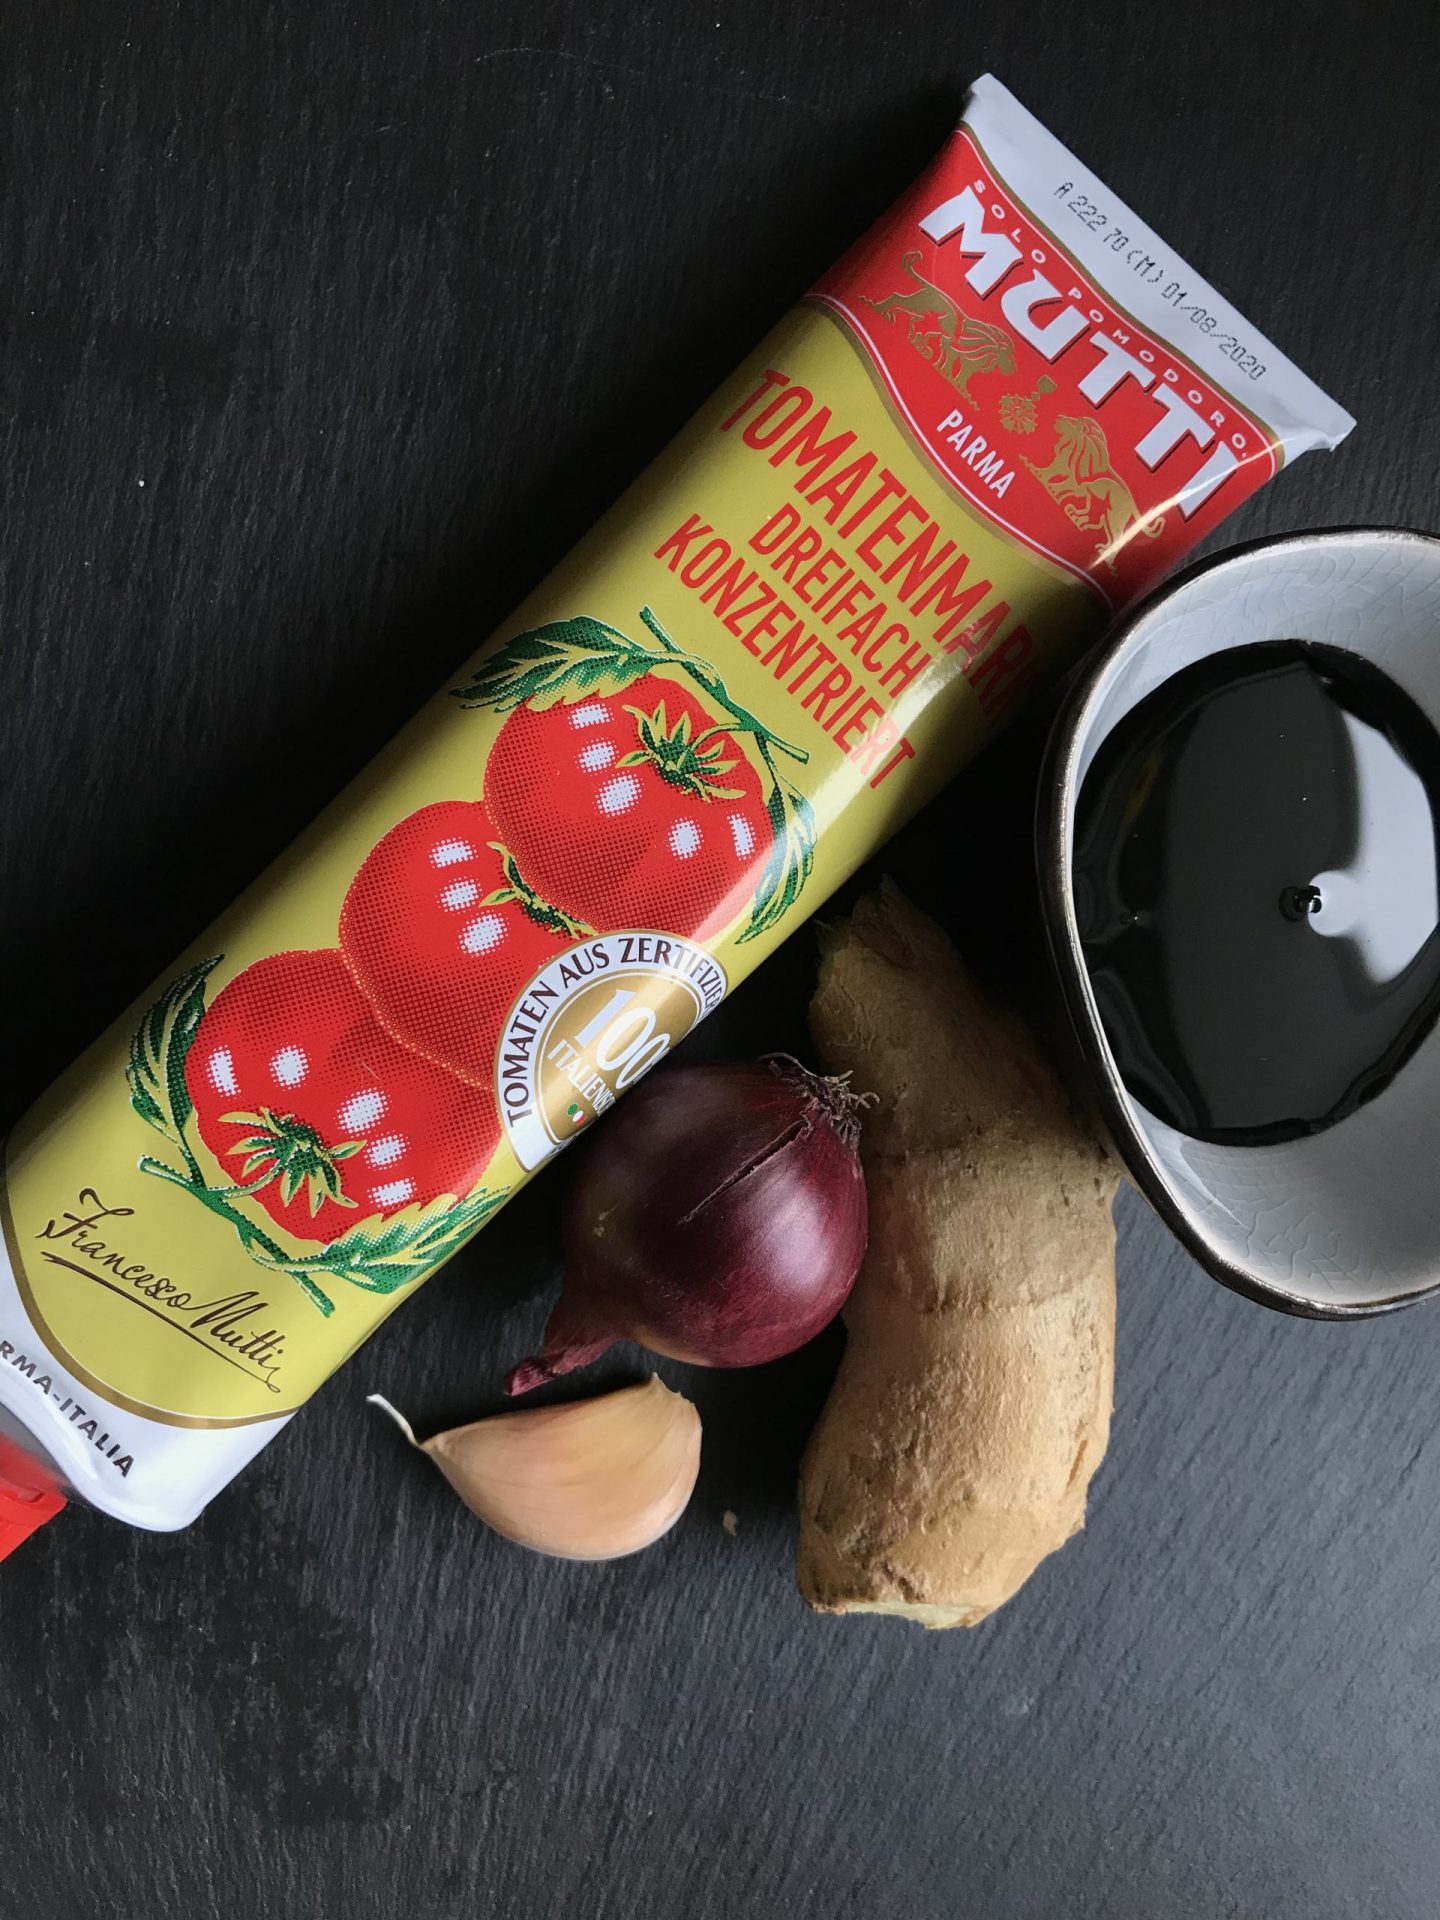 Erfahrung Bewertung Foodnews Mutti Tomatenmark Foodblog Sternestulle